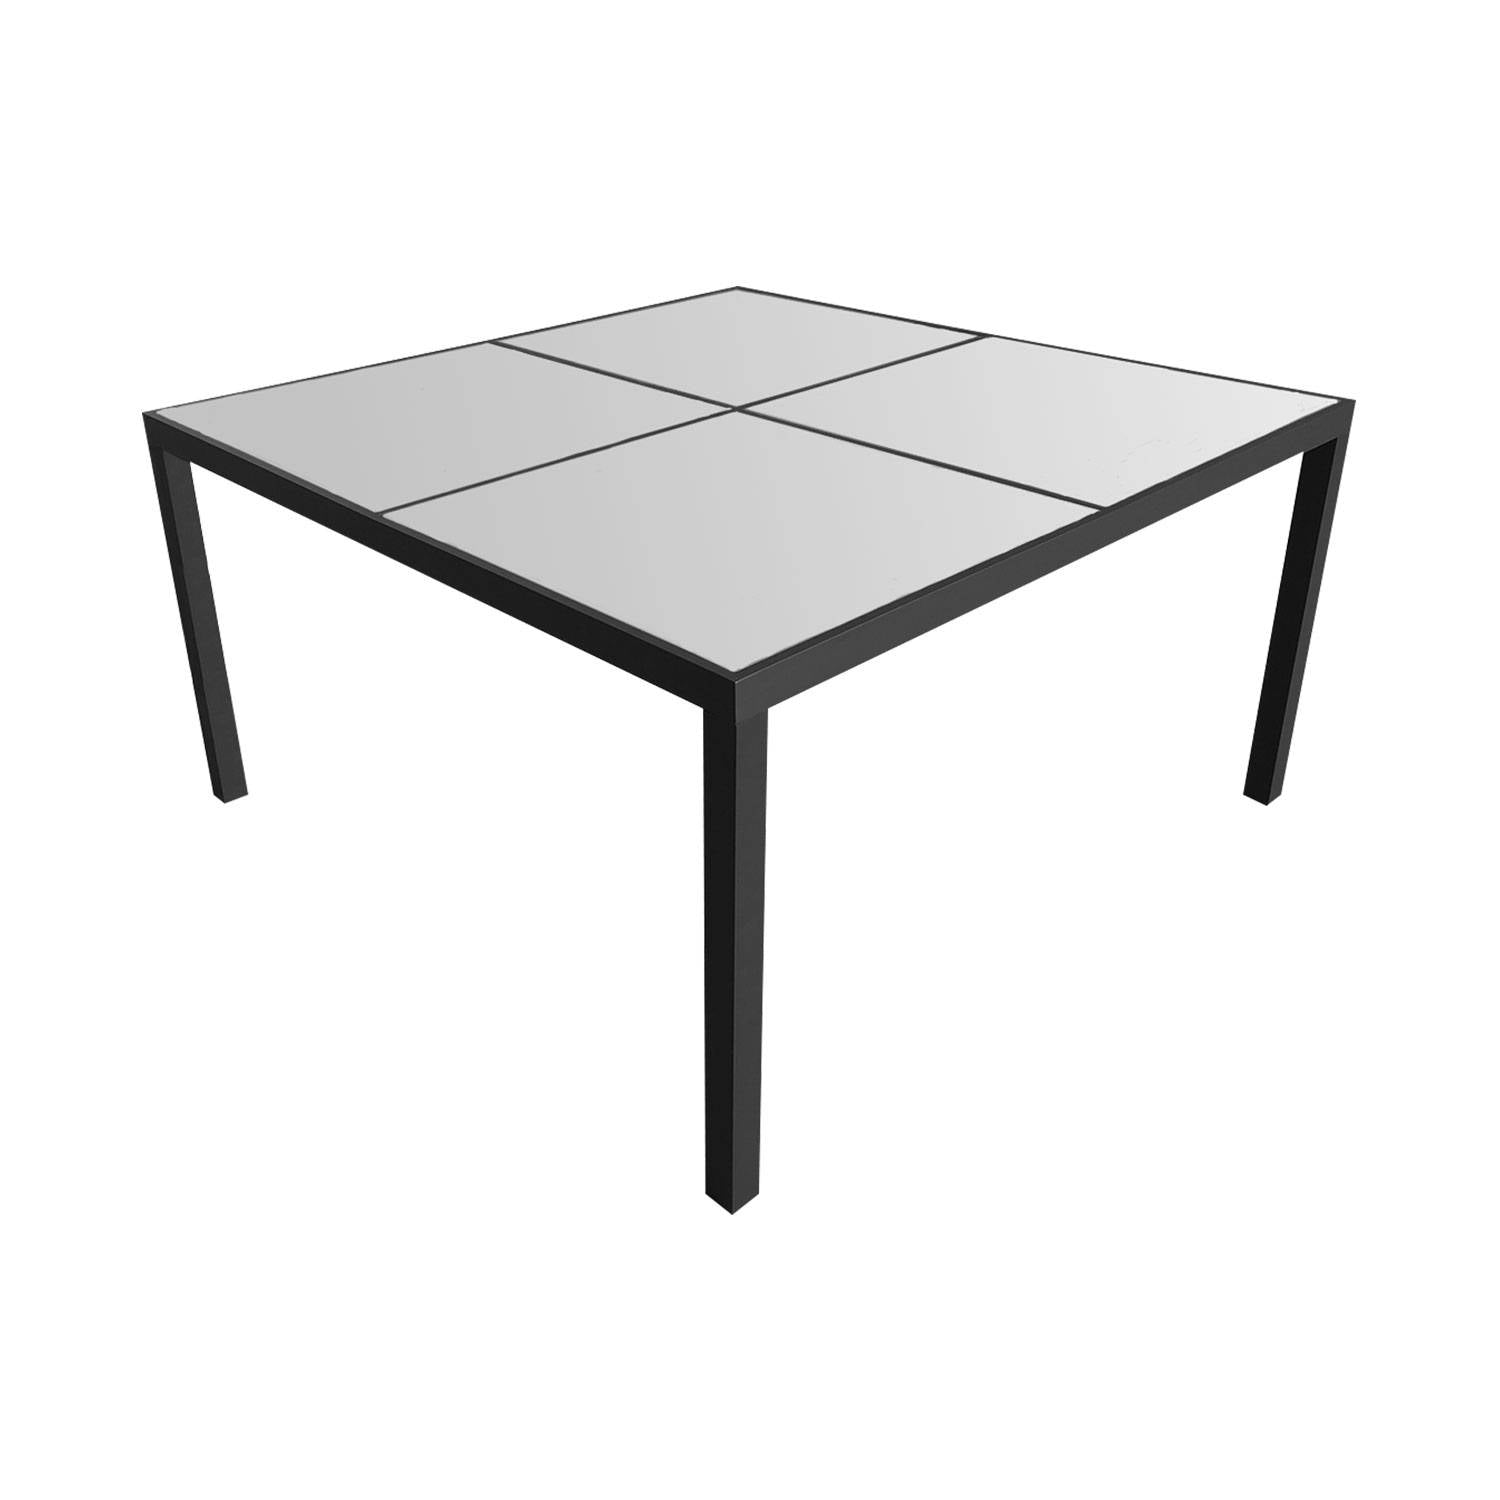 KAUAI - Conjunto de mesa y sillas de exterior - 8 plazas